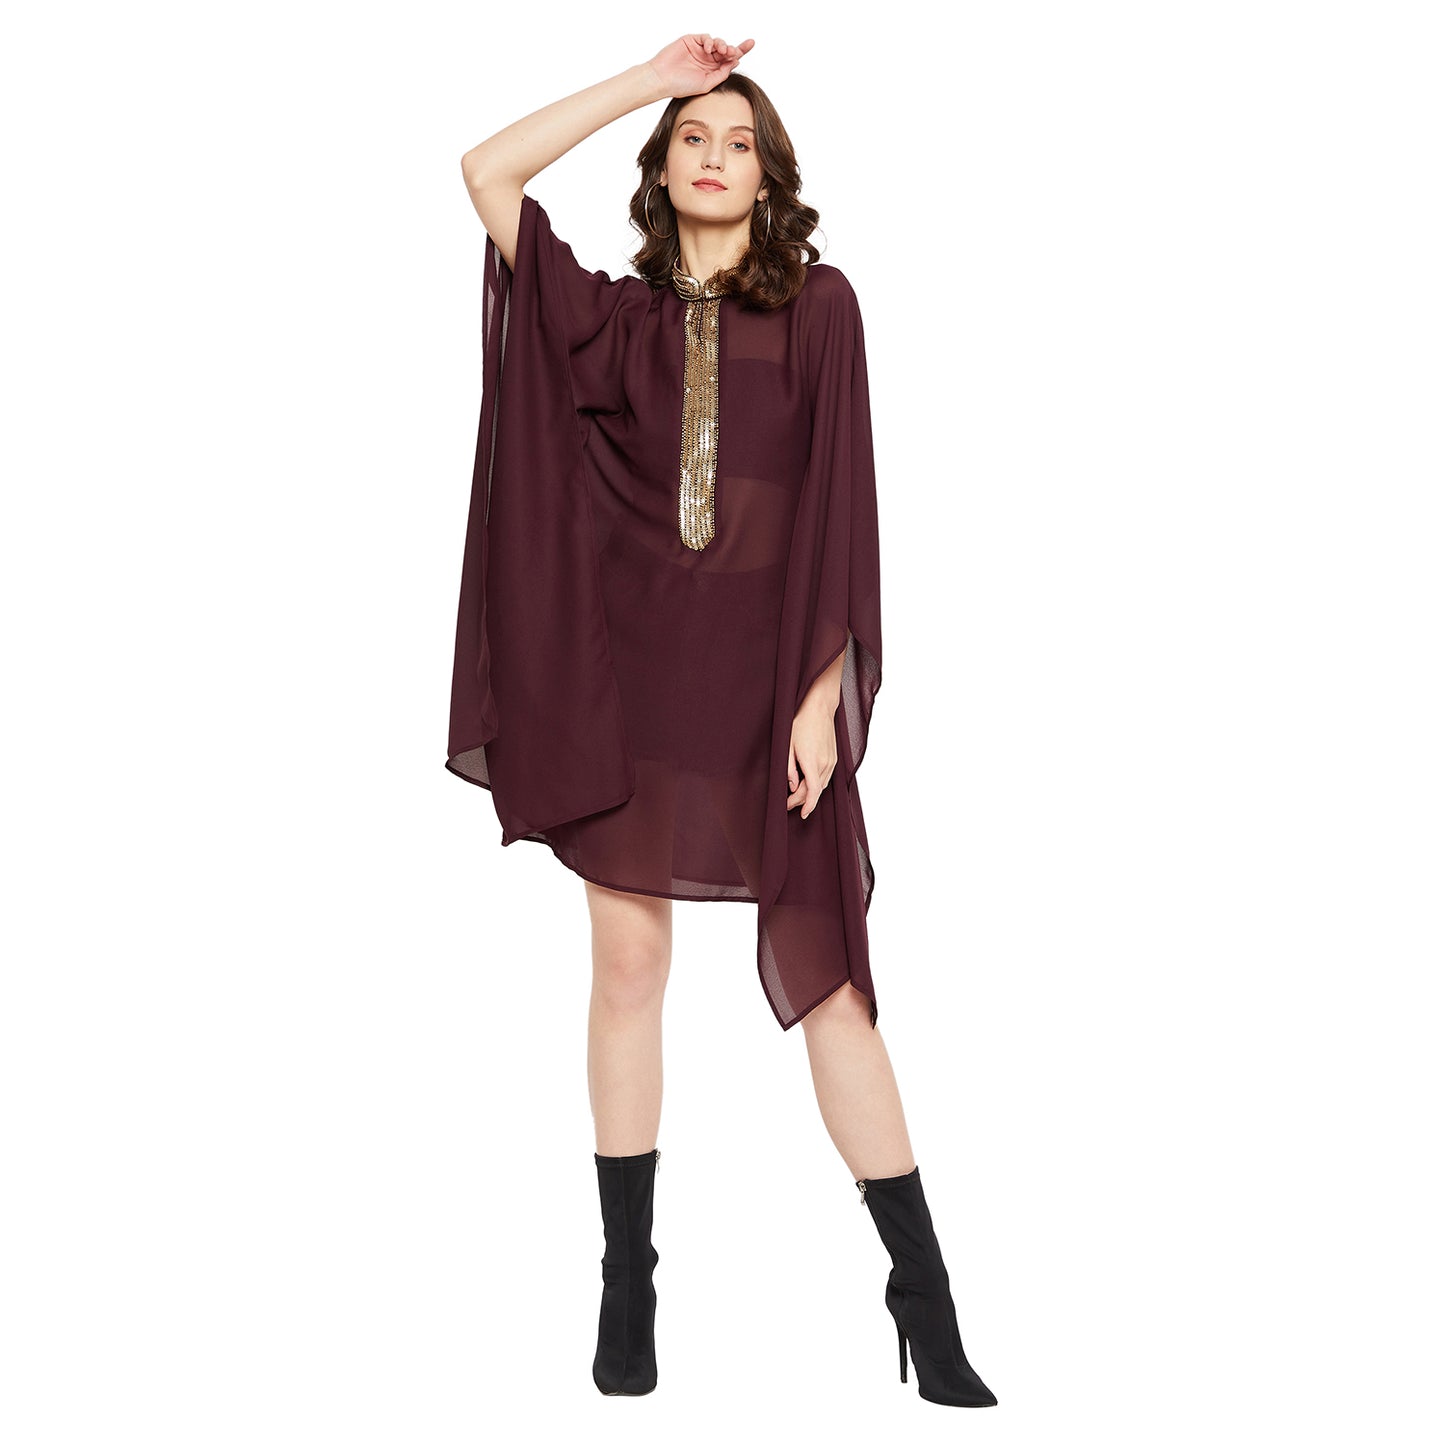 LY2 Elegant embellished short wine kaftan dress